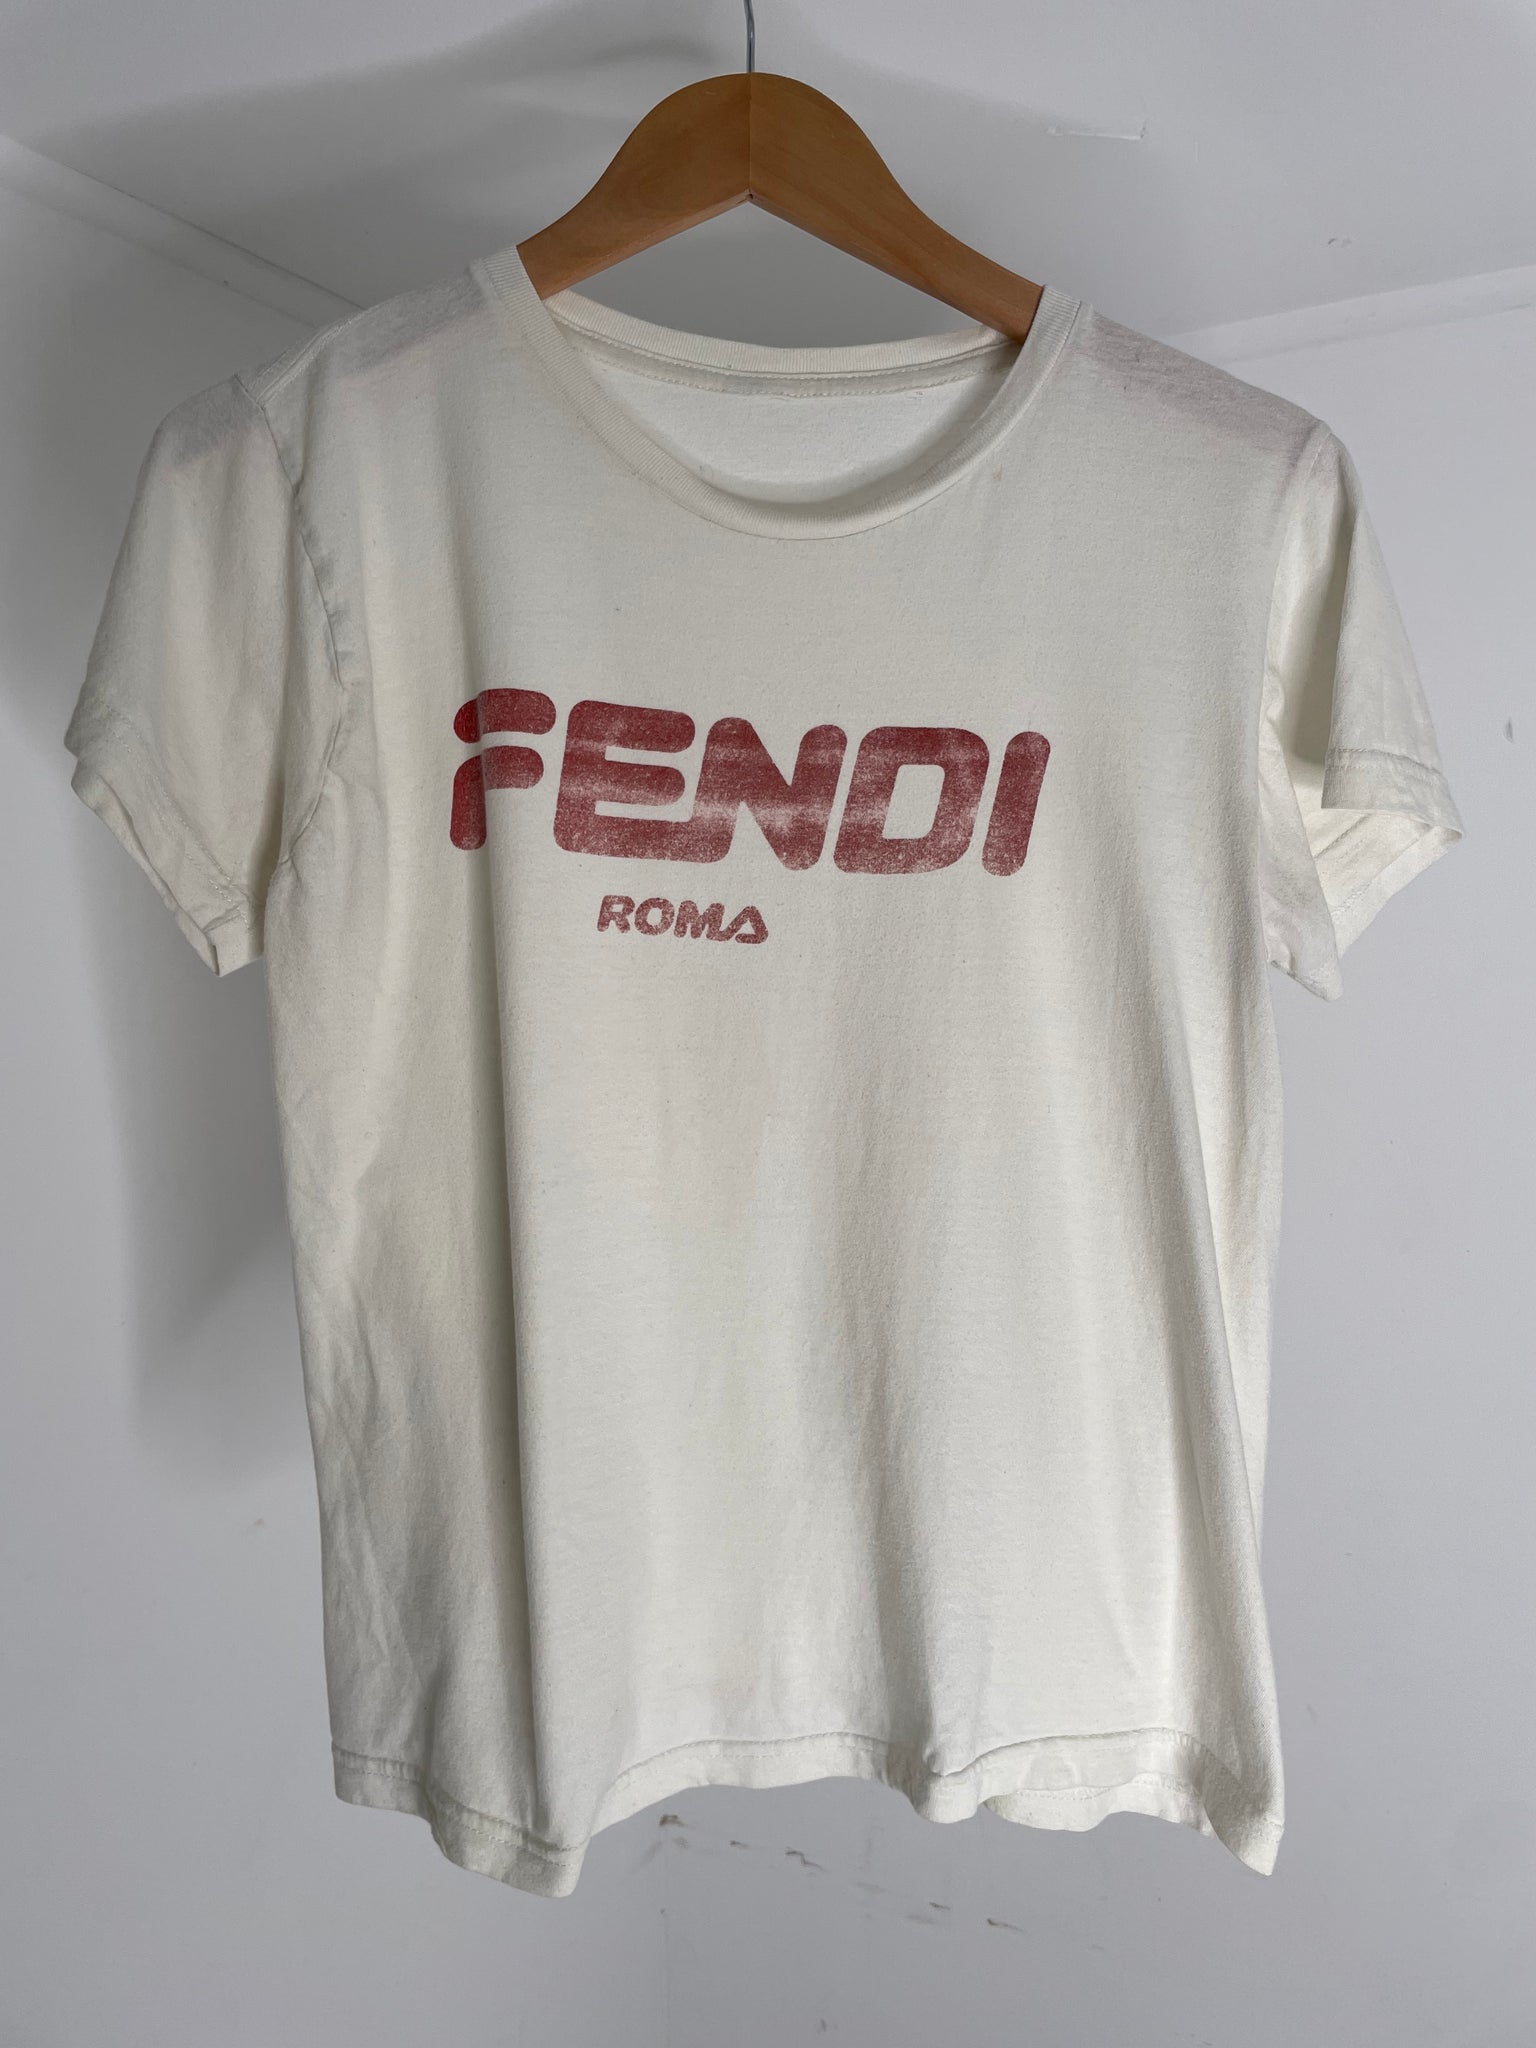 Vintage Fendi Roma T Shirt S